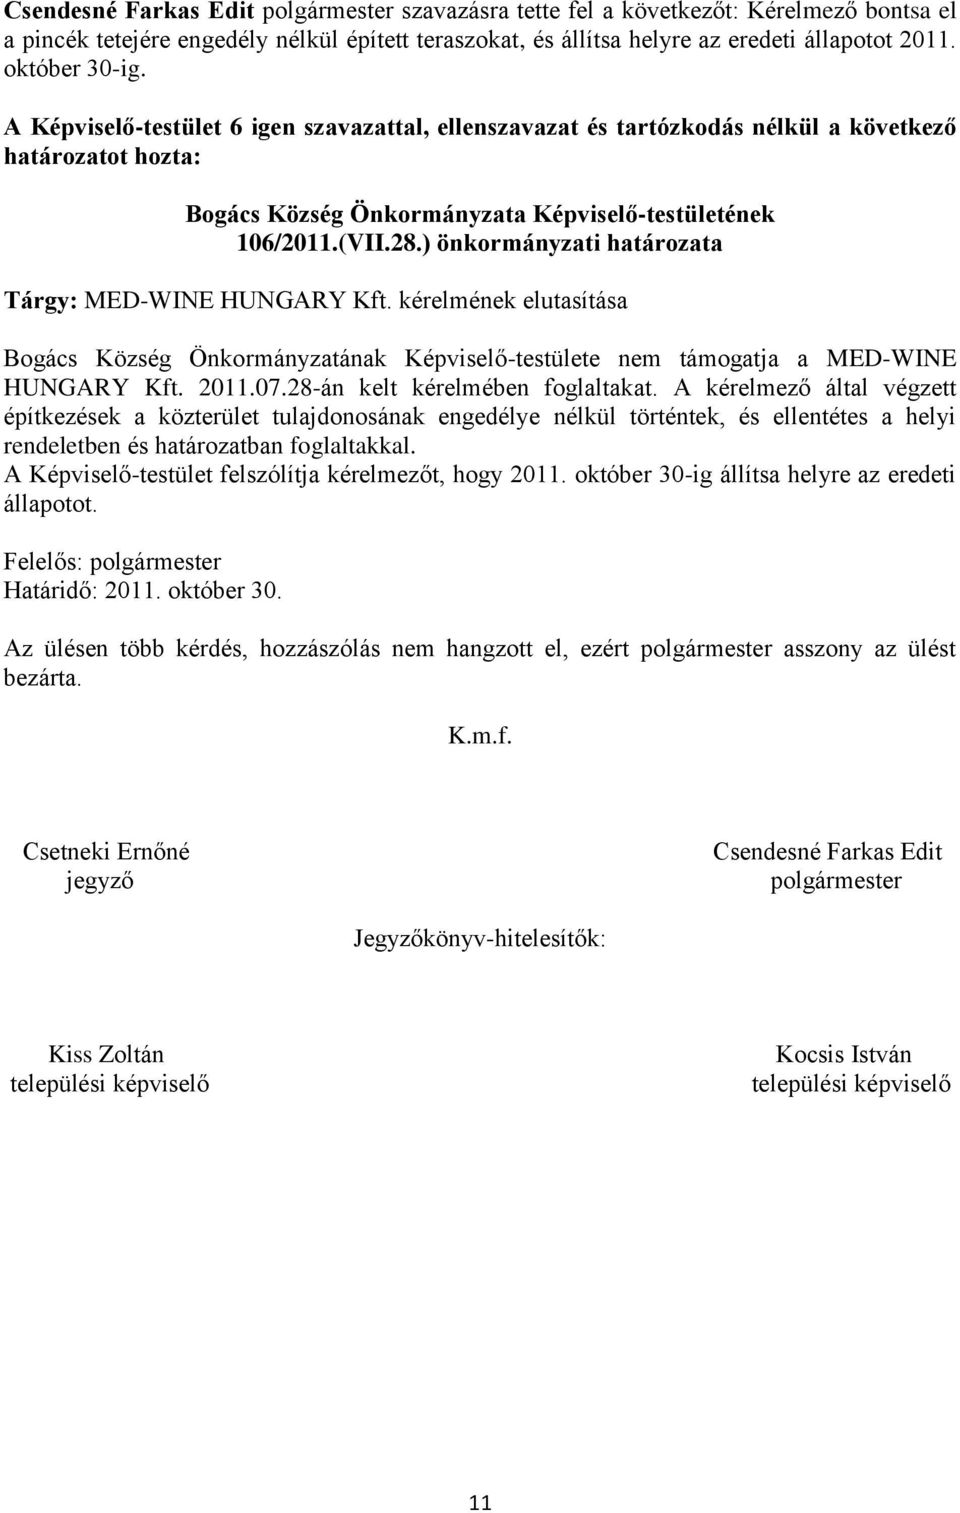 kérelmének elutasítása Bogács Község Önkormányzatának Képviselő-testülete nem támogatja a MED-WINE HUNGARY Kft. 2011.07.28-án kelt kérelmében foglaltakat.